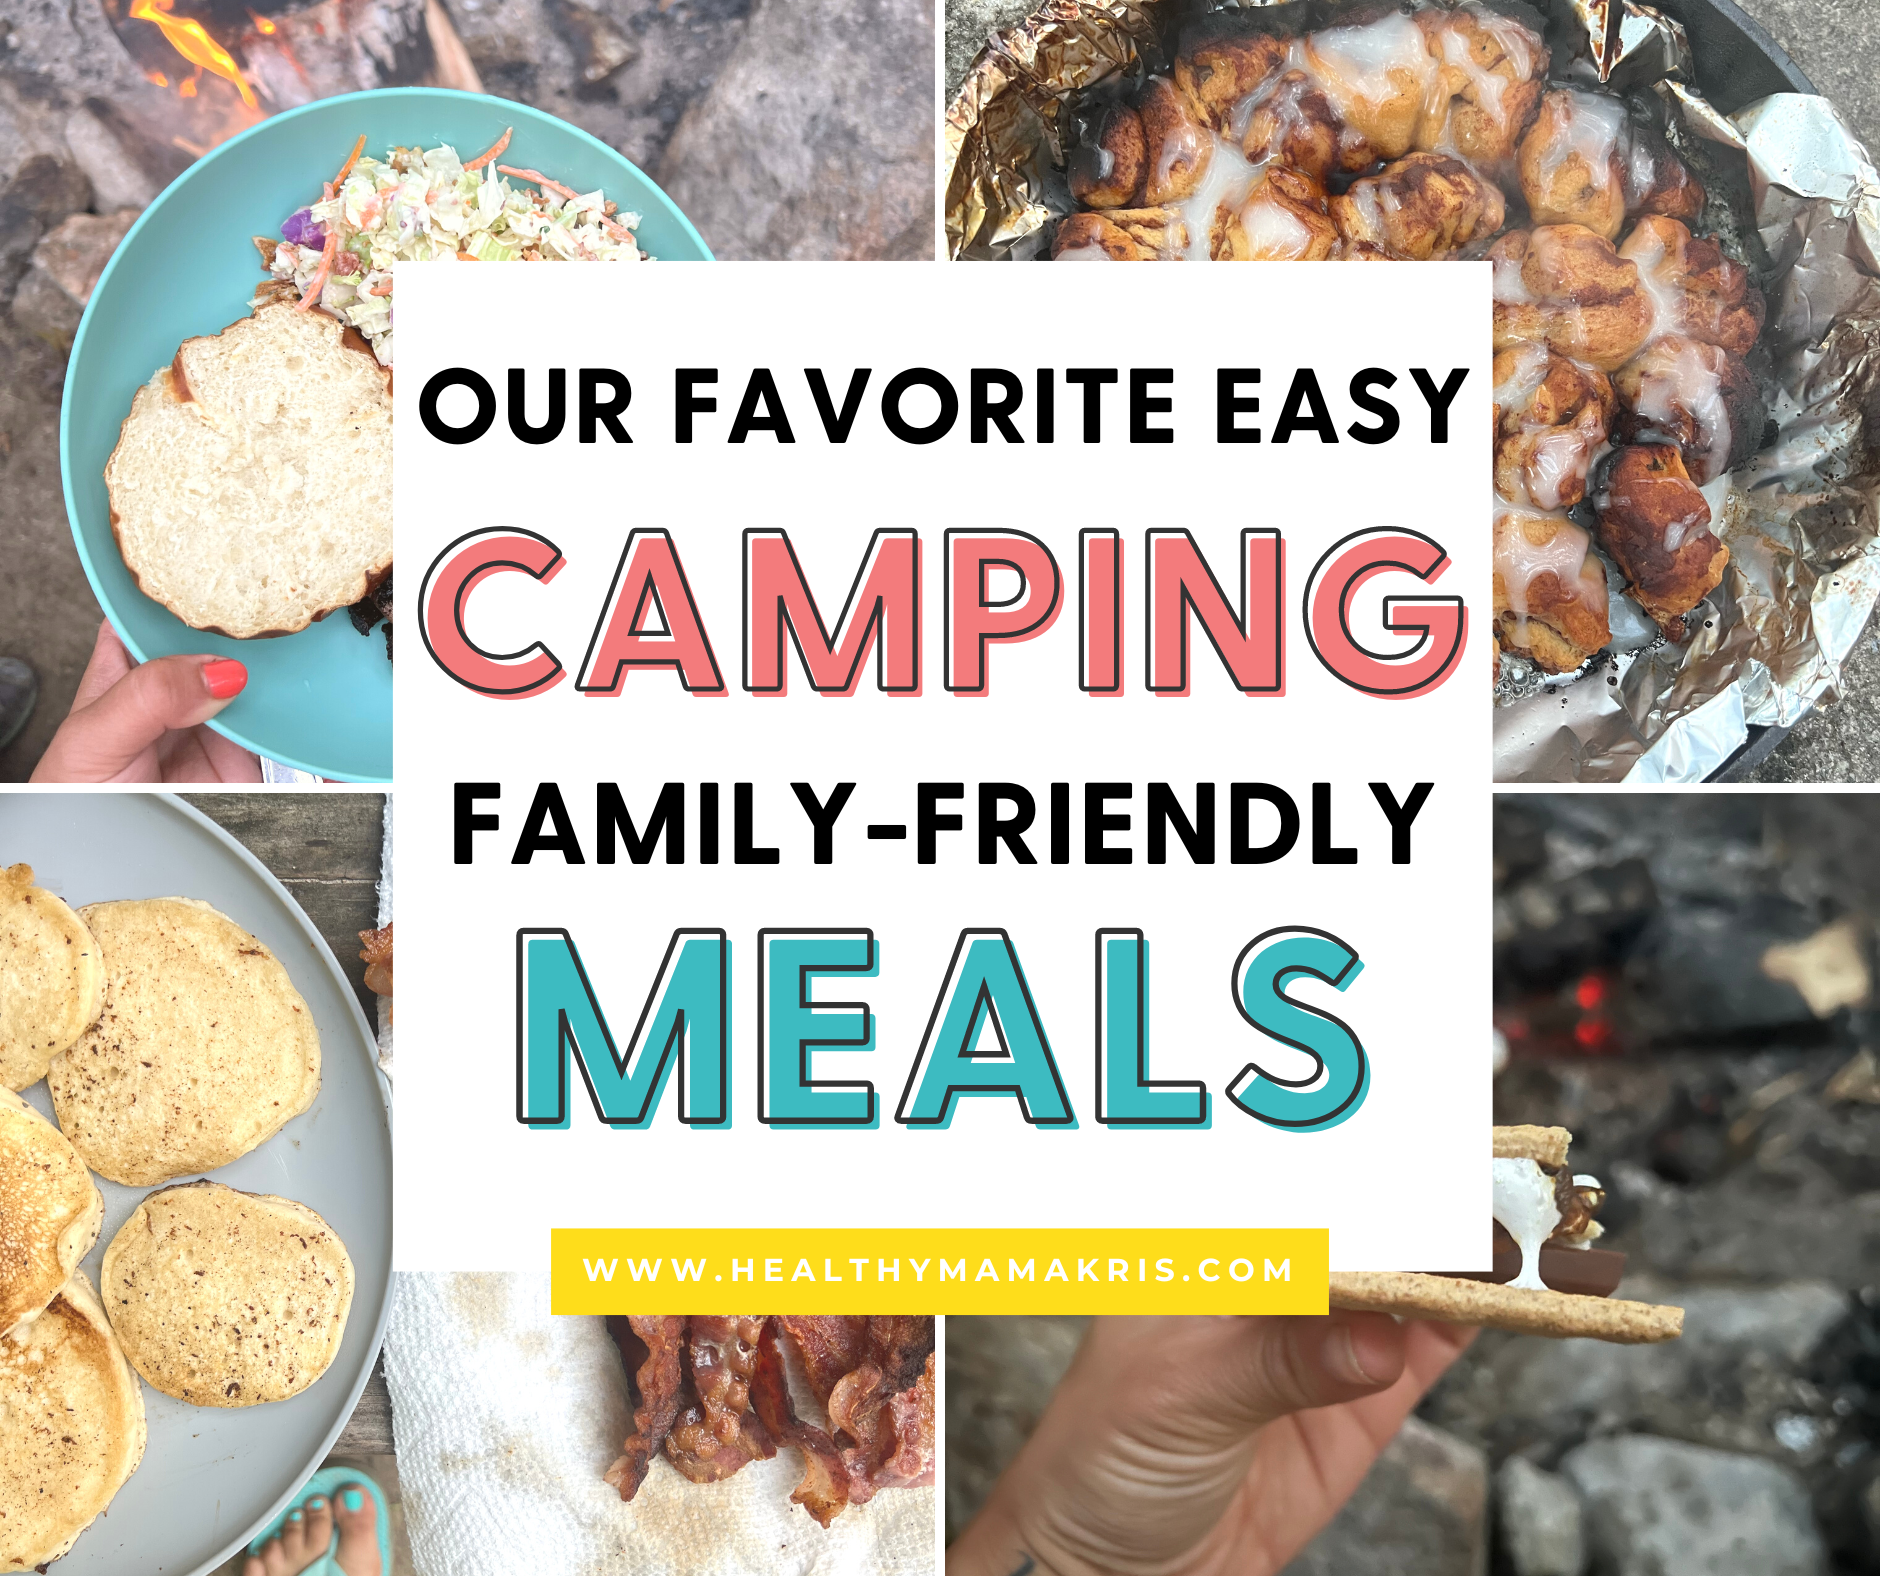 Skillet Camping Recipes: Campfire Cornbread, Enchiladas, and S'mores